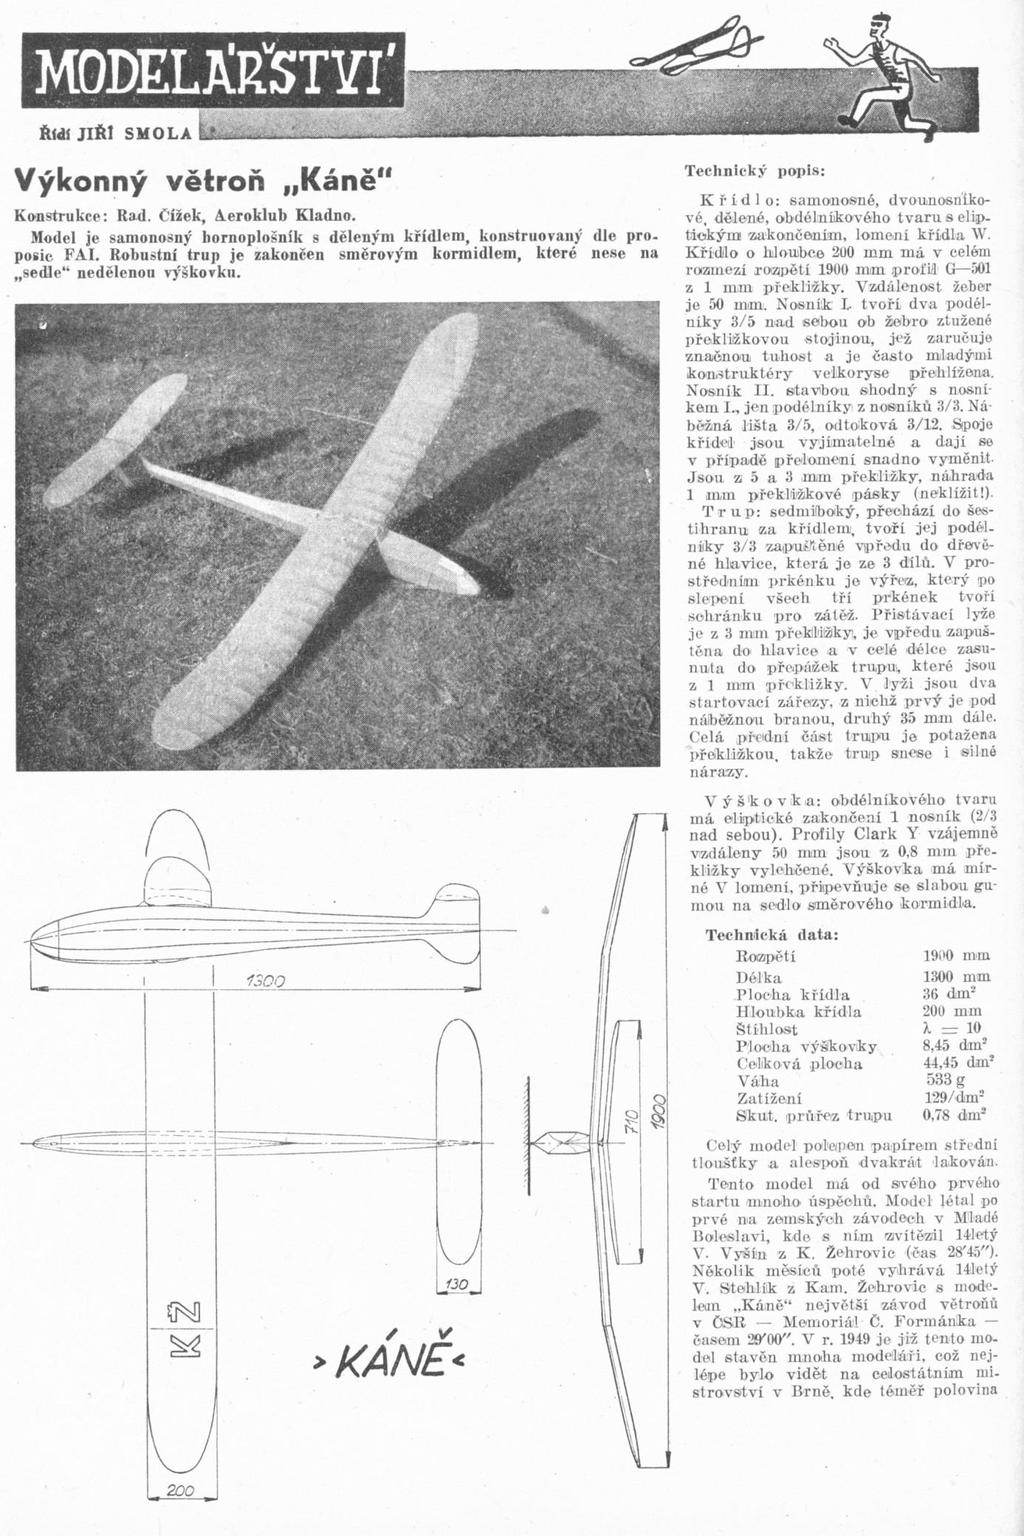 Článek z časopisu Letectví 1949 Chybný údaj v